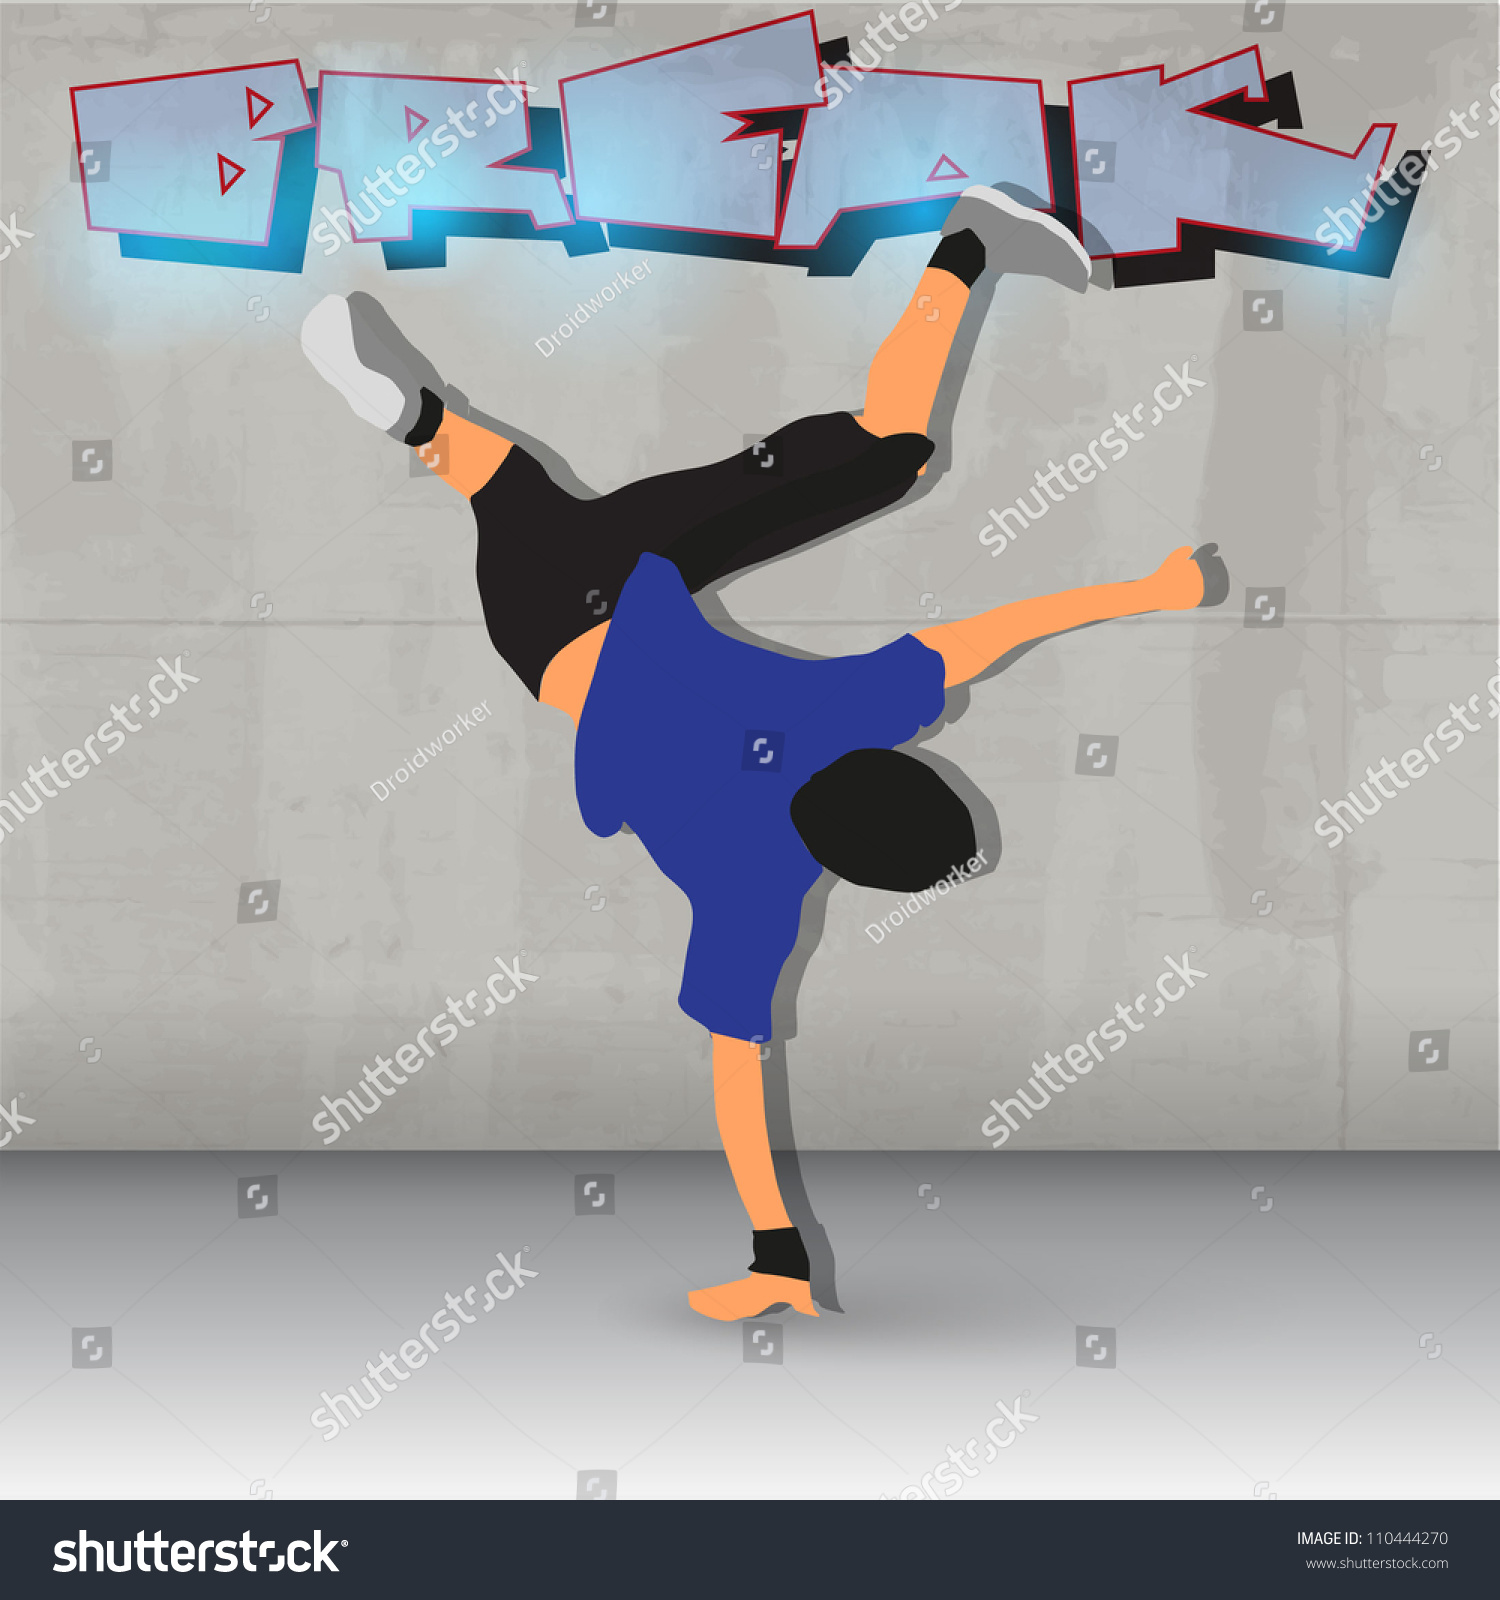 SVG of break dancer vector illustration. svg